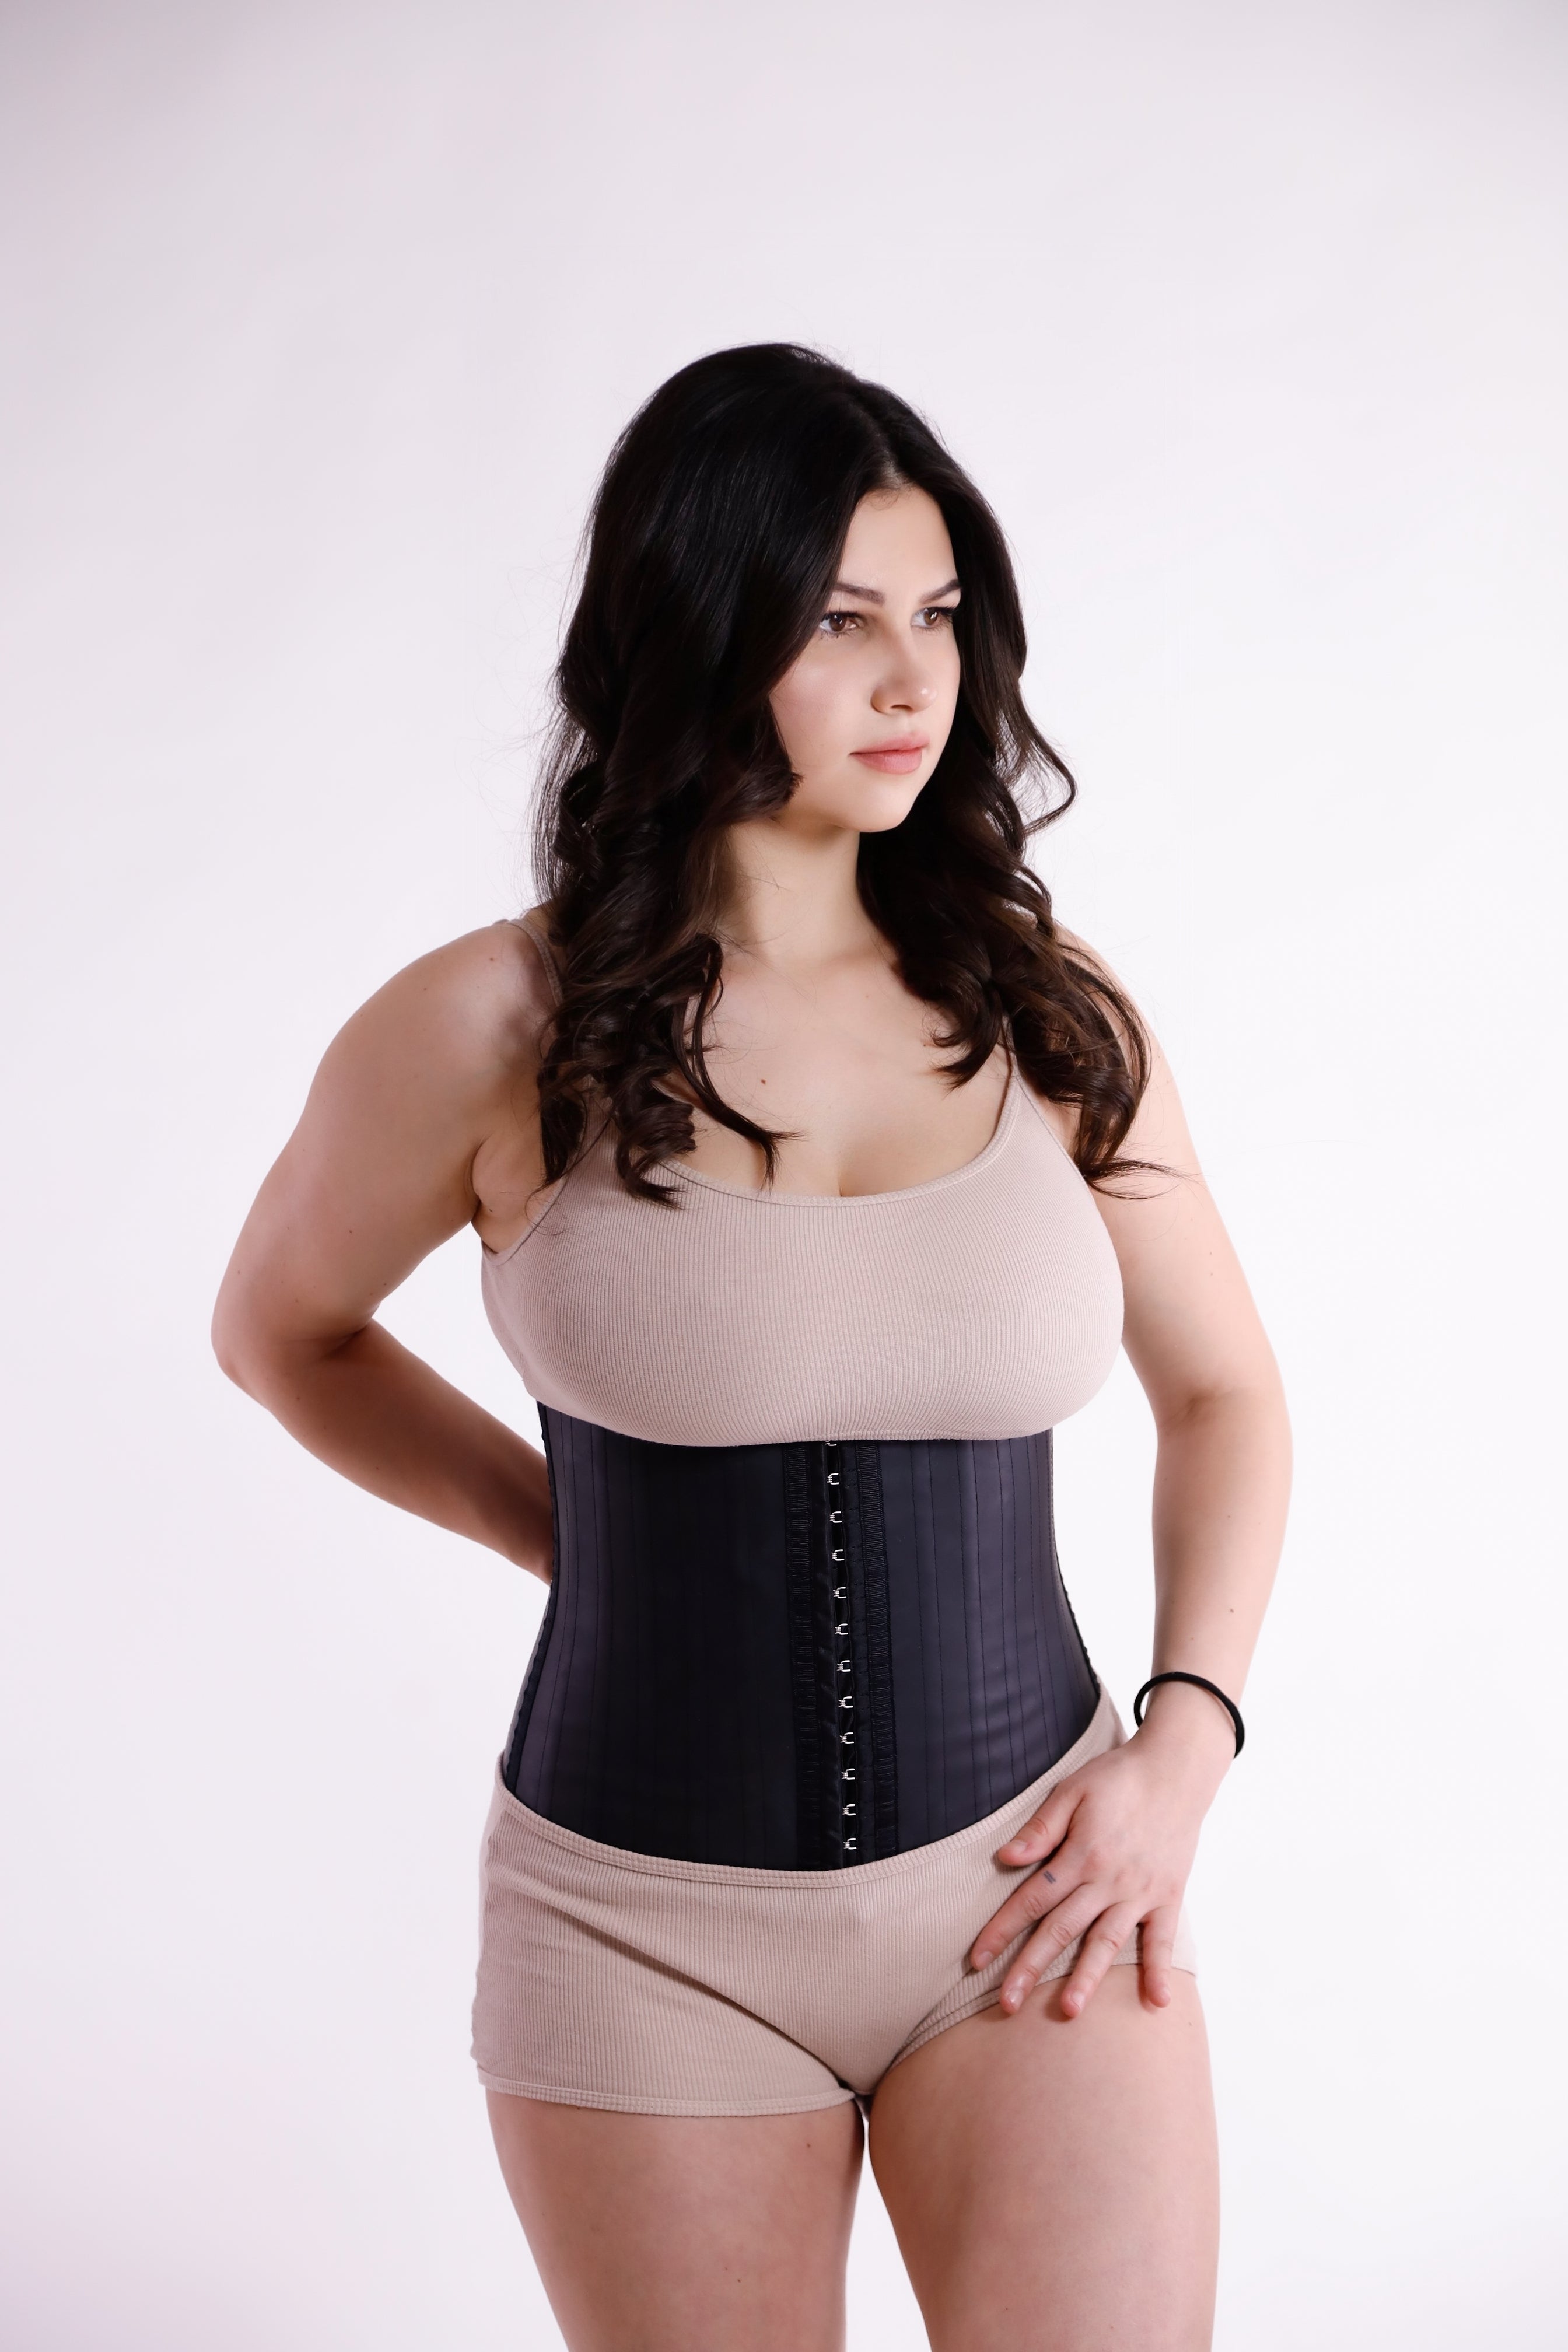 Čvrst i pouzdan: Udoban steznik po preporuci žena koji briše centimetre u  struku i trbuhu